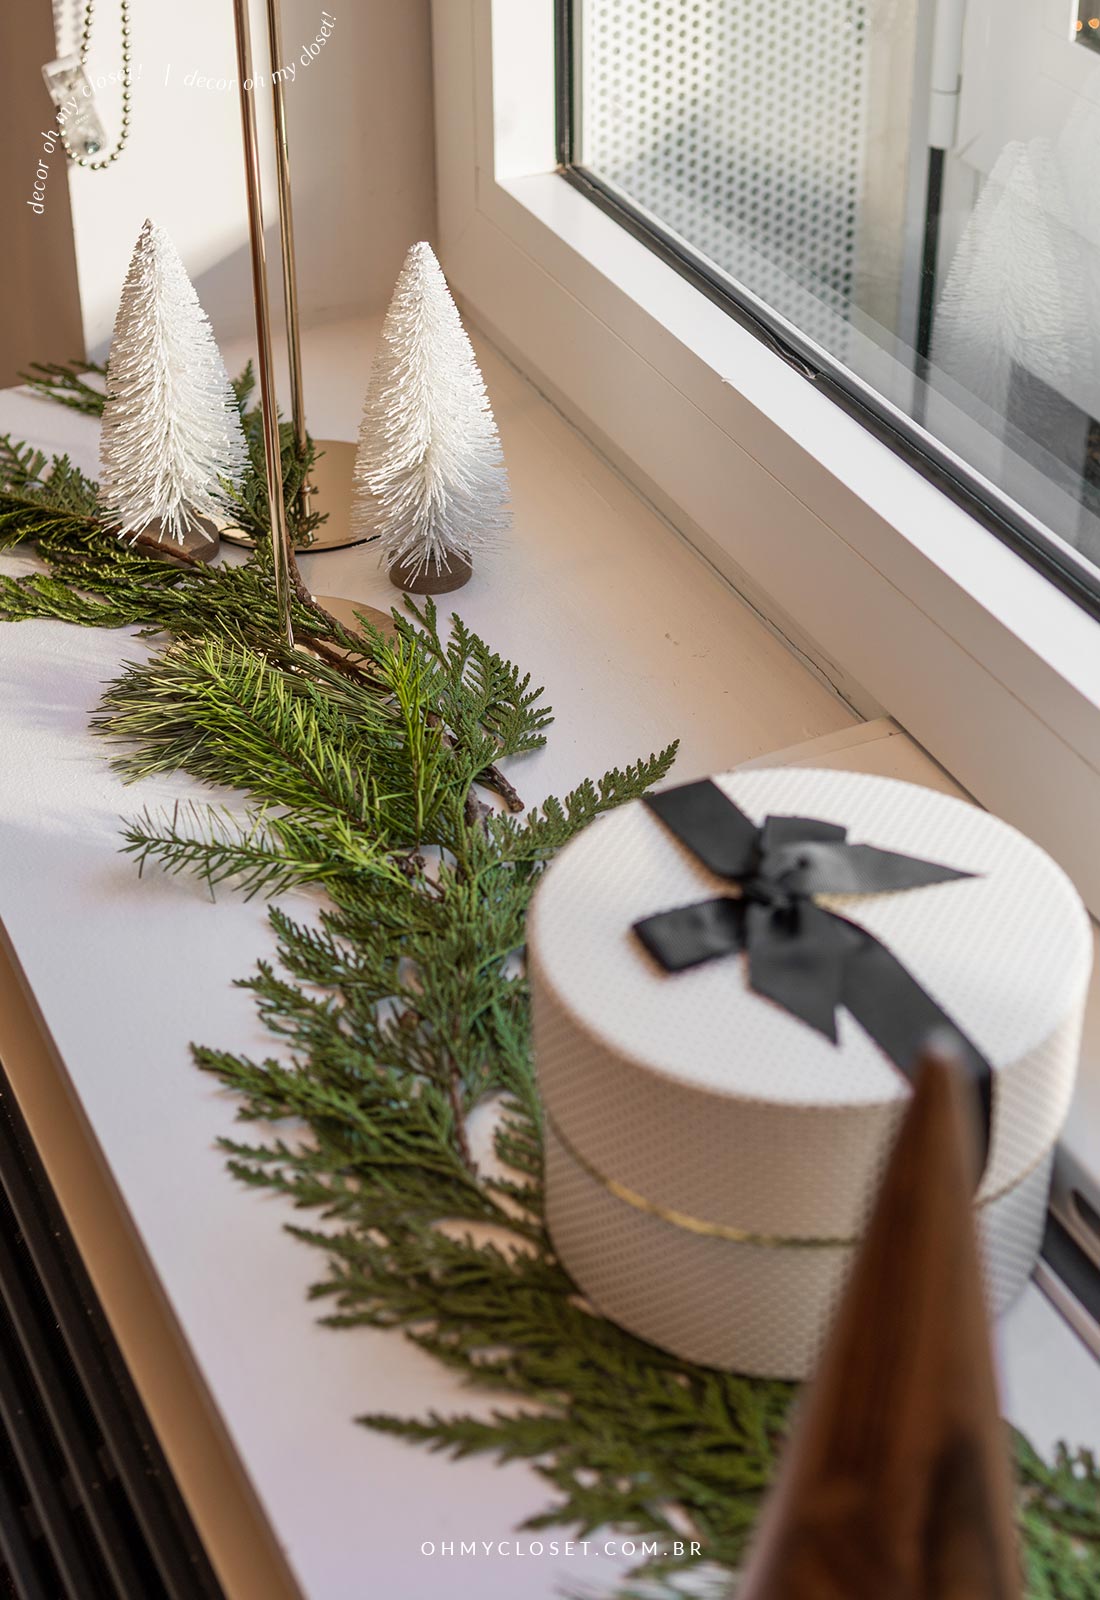 Decoração de Natal - Um Guia Para o Estilo Escandinavo - Oh My Closet!